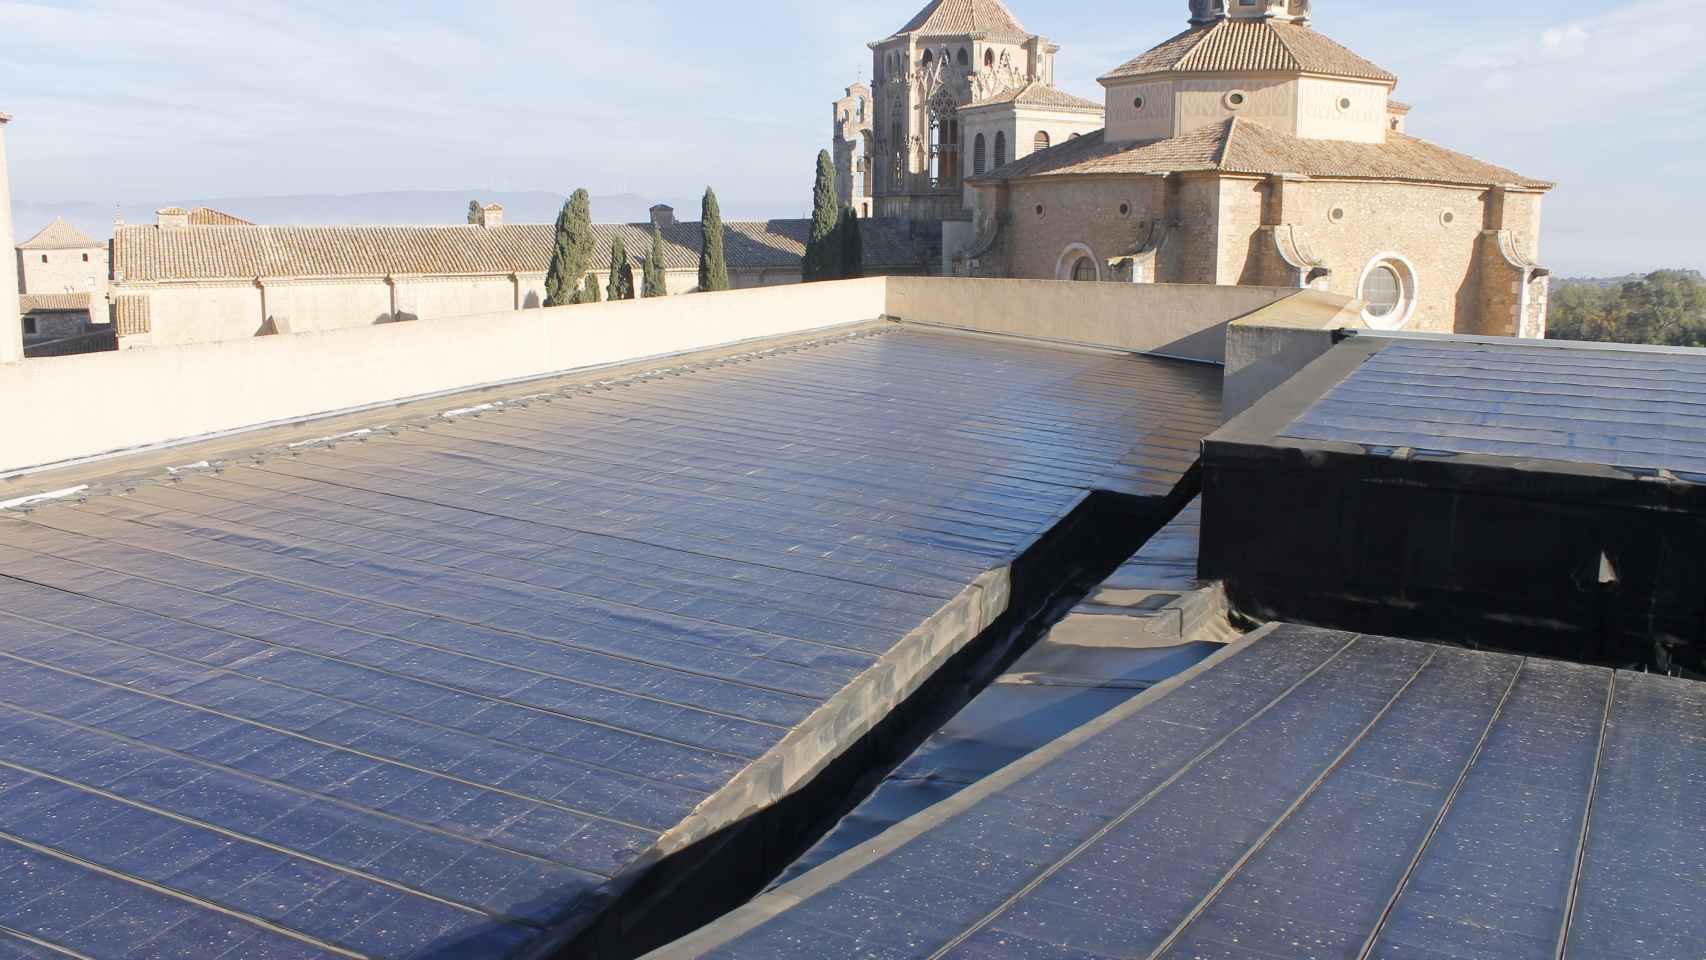 Las placas solares del monasterio pretenden no alterar la estética.